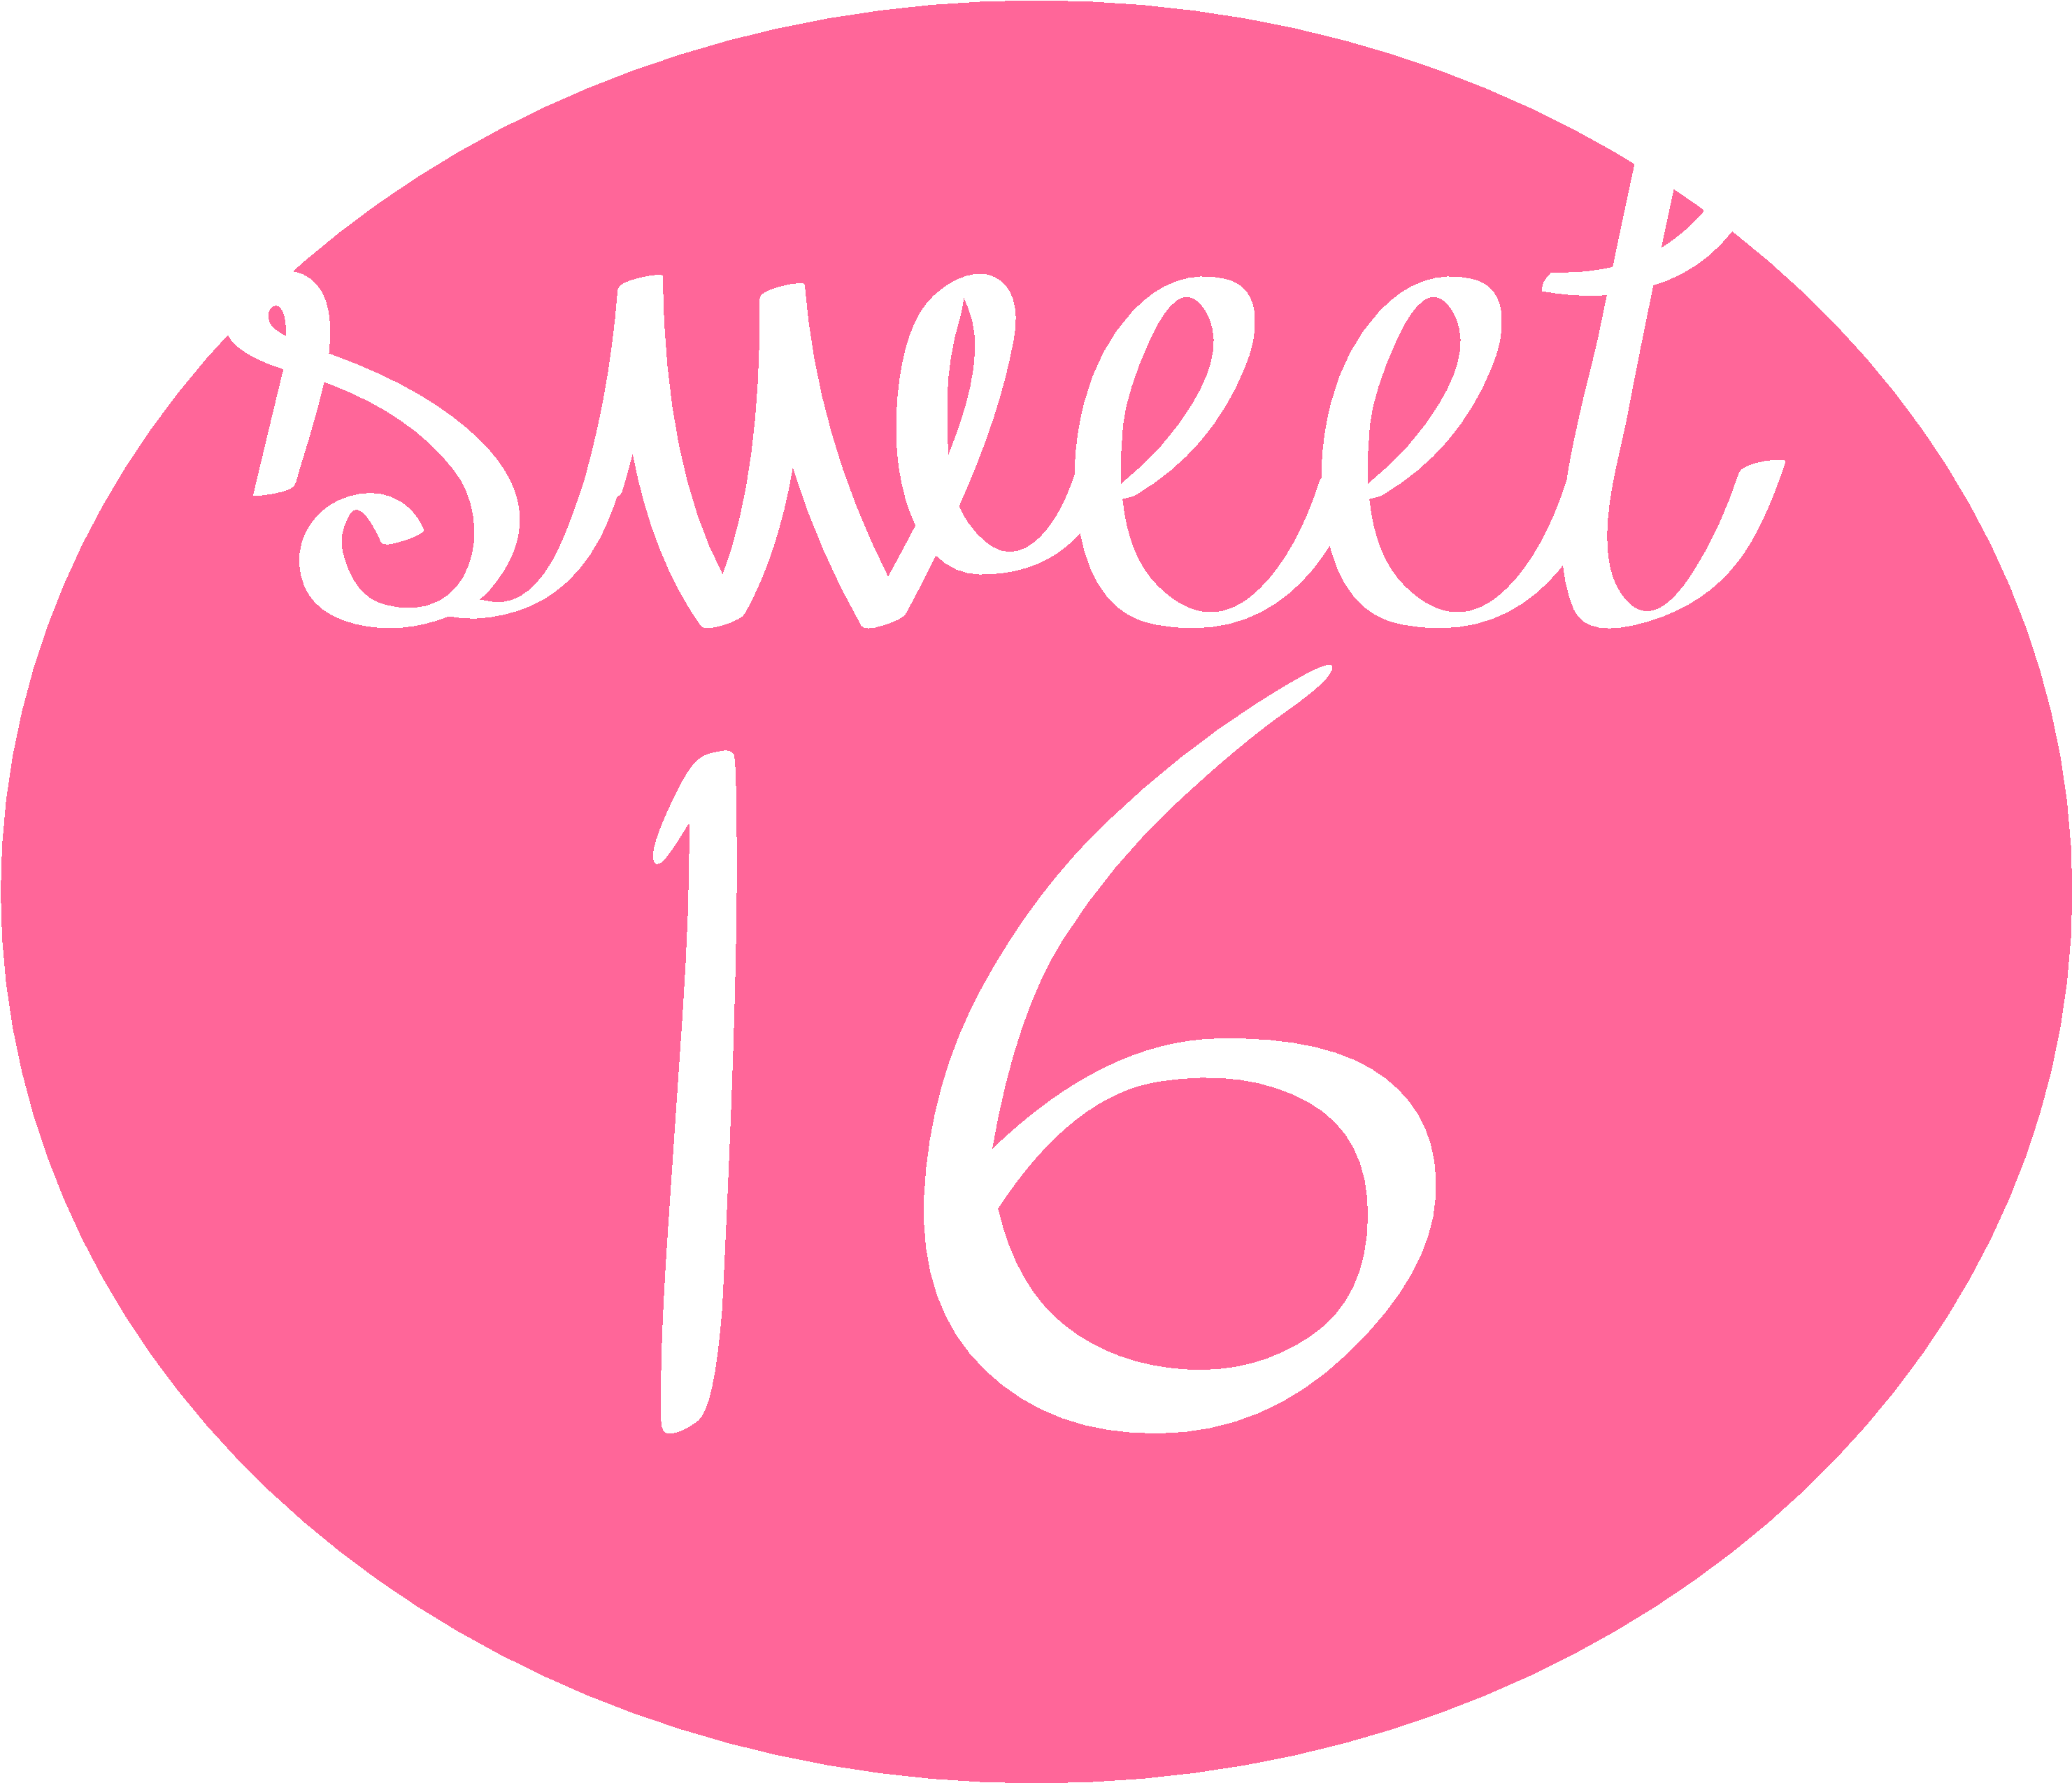 Sweet 16 Logo - 16 Sweet (3114x2926), Png Download